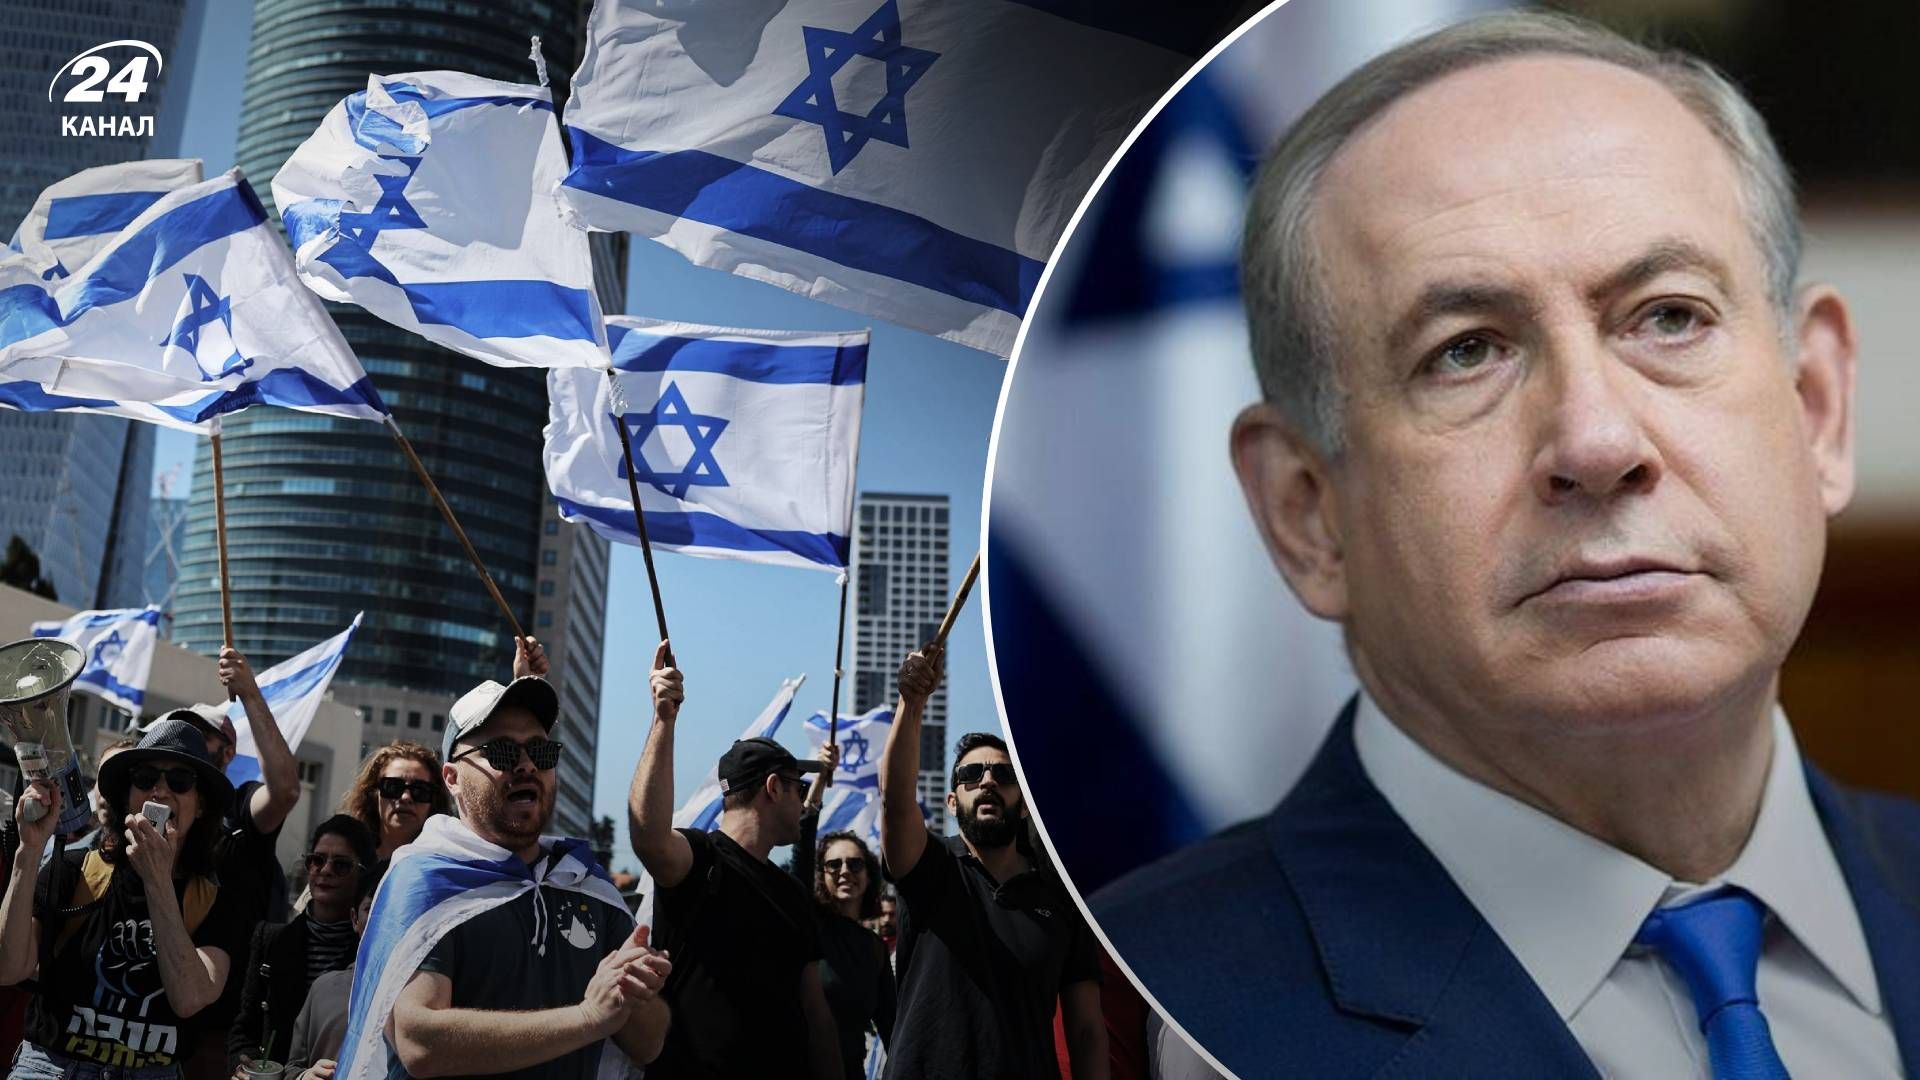 Протести в Ізраїлі - чи Нетаньягу від судової реформи